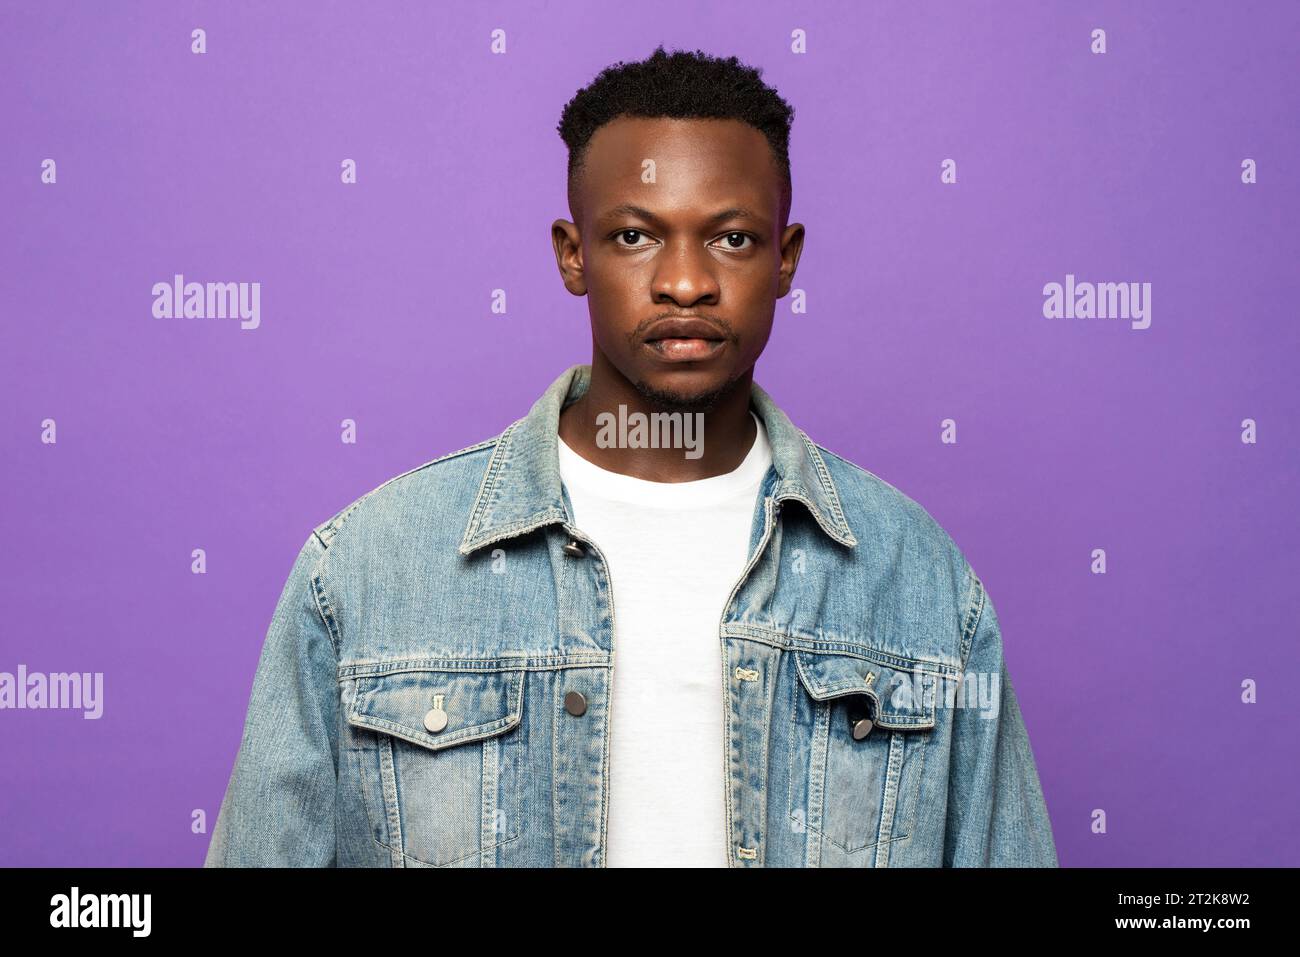 Ritratto del volto di un giovane uomo africano che guarda la fotocamera in uno studio di colore viola con sfondo isolato Foto Stock